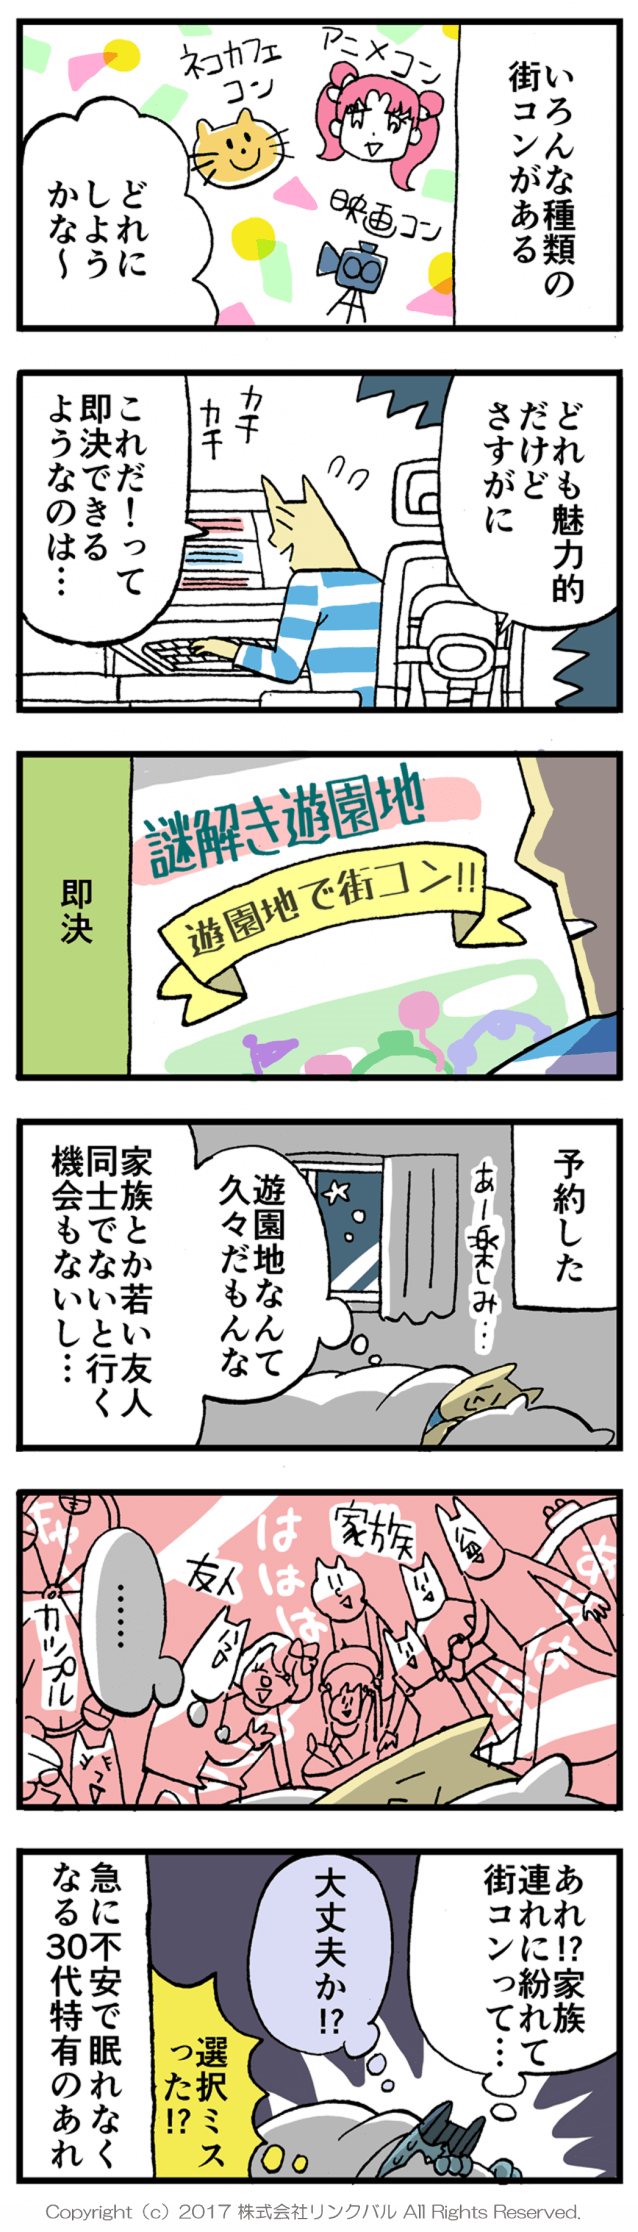 【婚活漫画】アラサー街コン物語・第4話「イベント決定！」